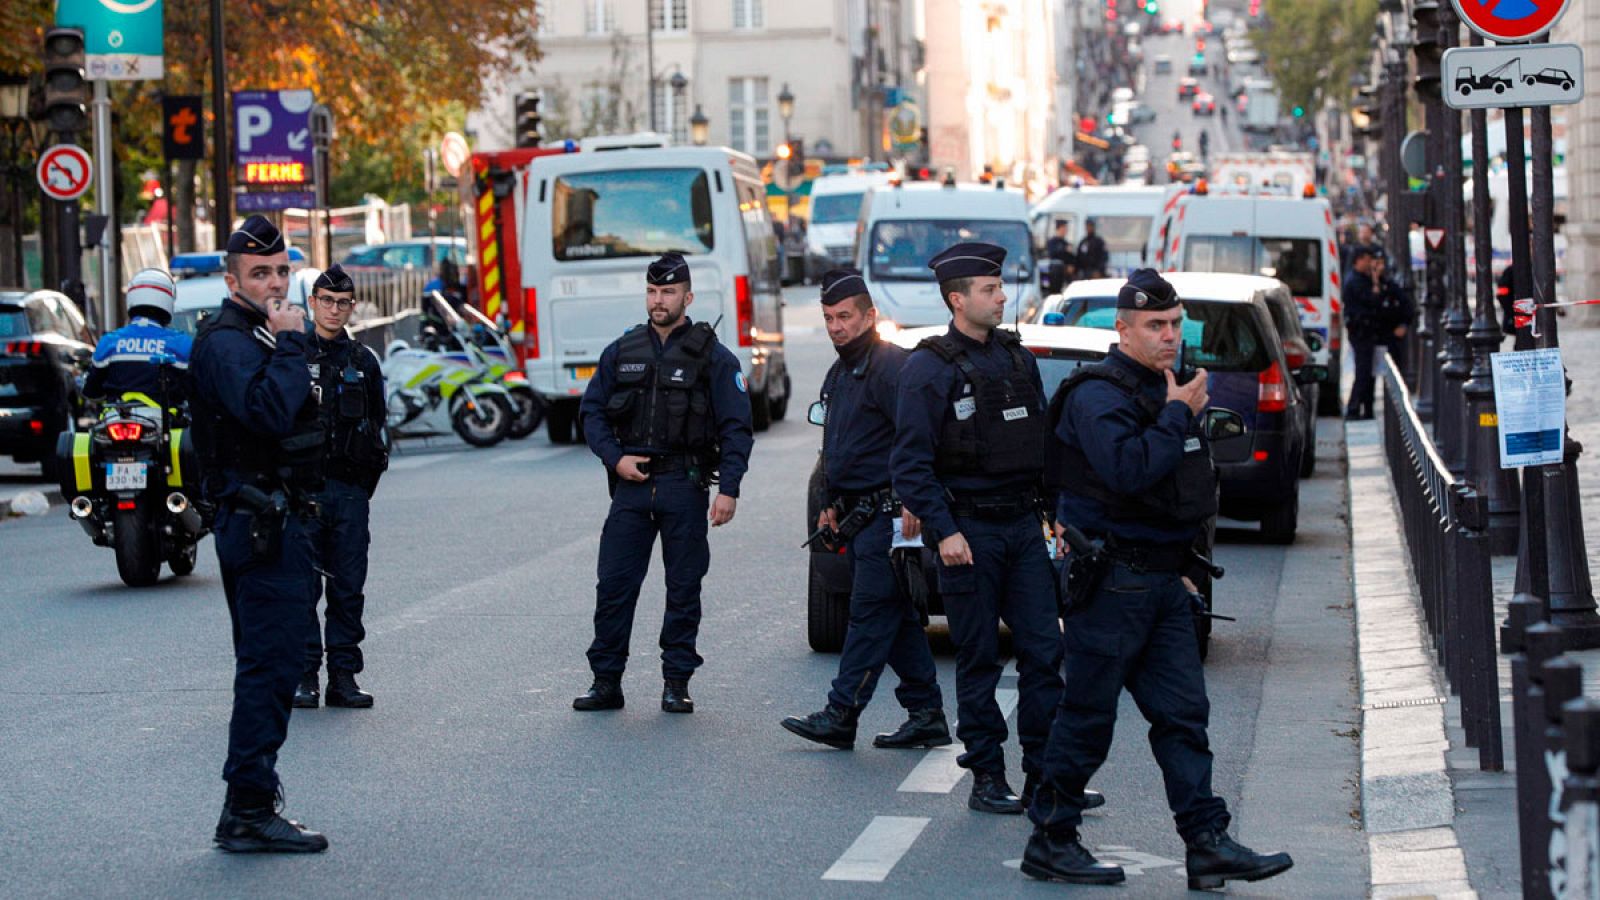 El asesino de la Prefectura de París tuvo alucinaciones y escuchó voces la noche anterior al ataque, según su mujer